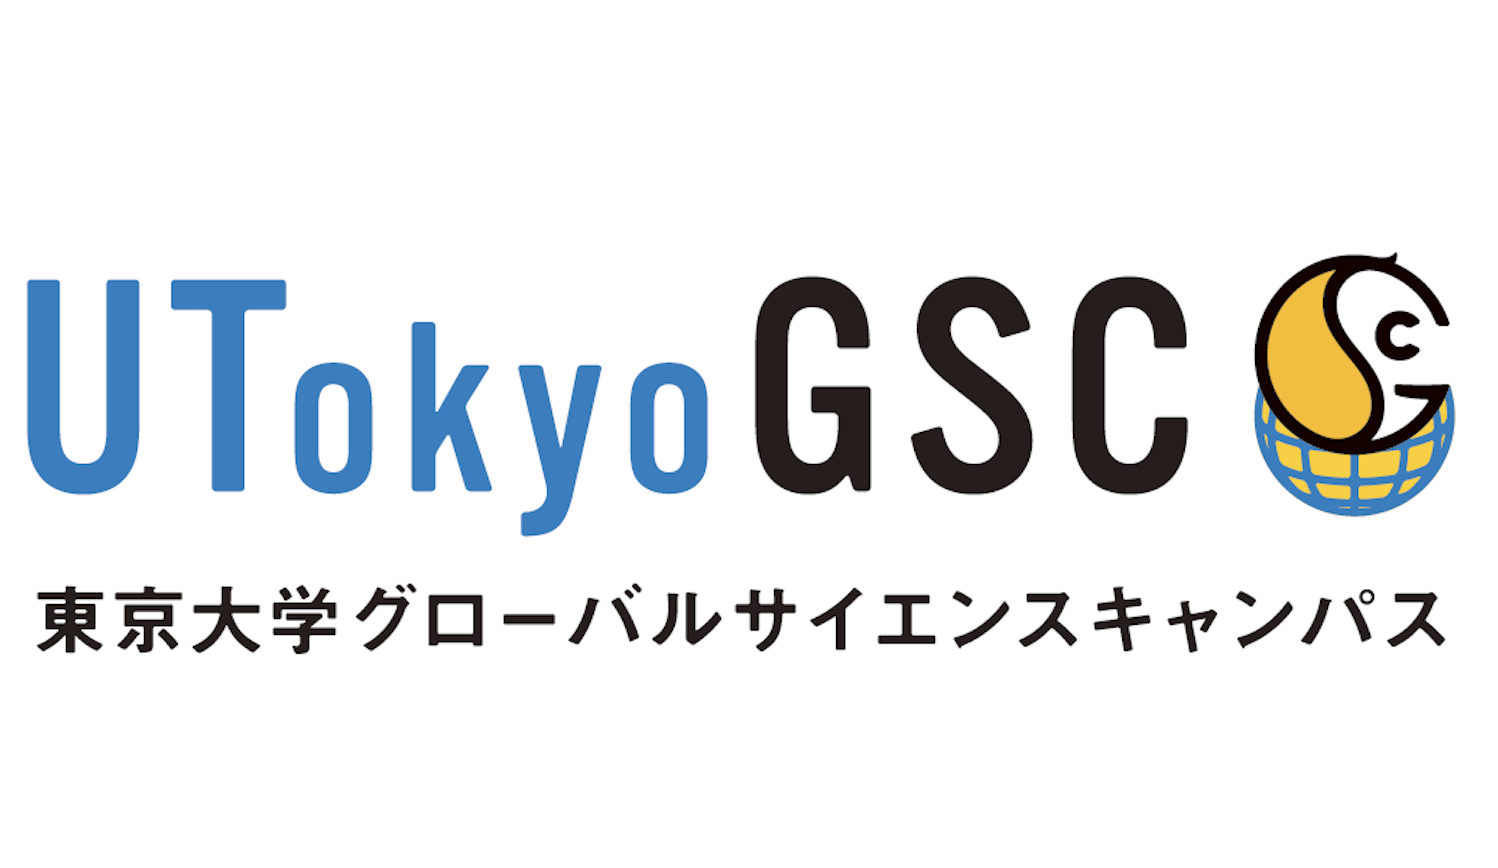 東京大学で研究活動をしてみたい高校生！ UTokyoGSCに参加してみませんか？ 【応募締切：6/9(水)正午】